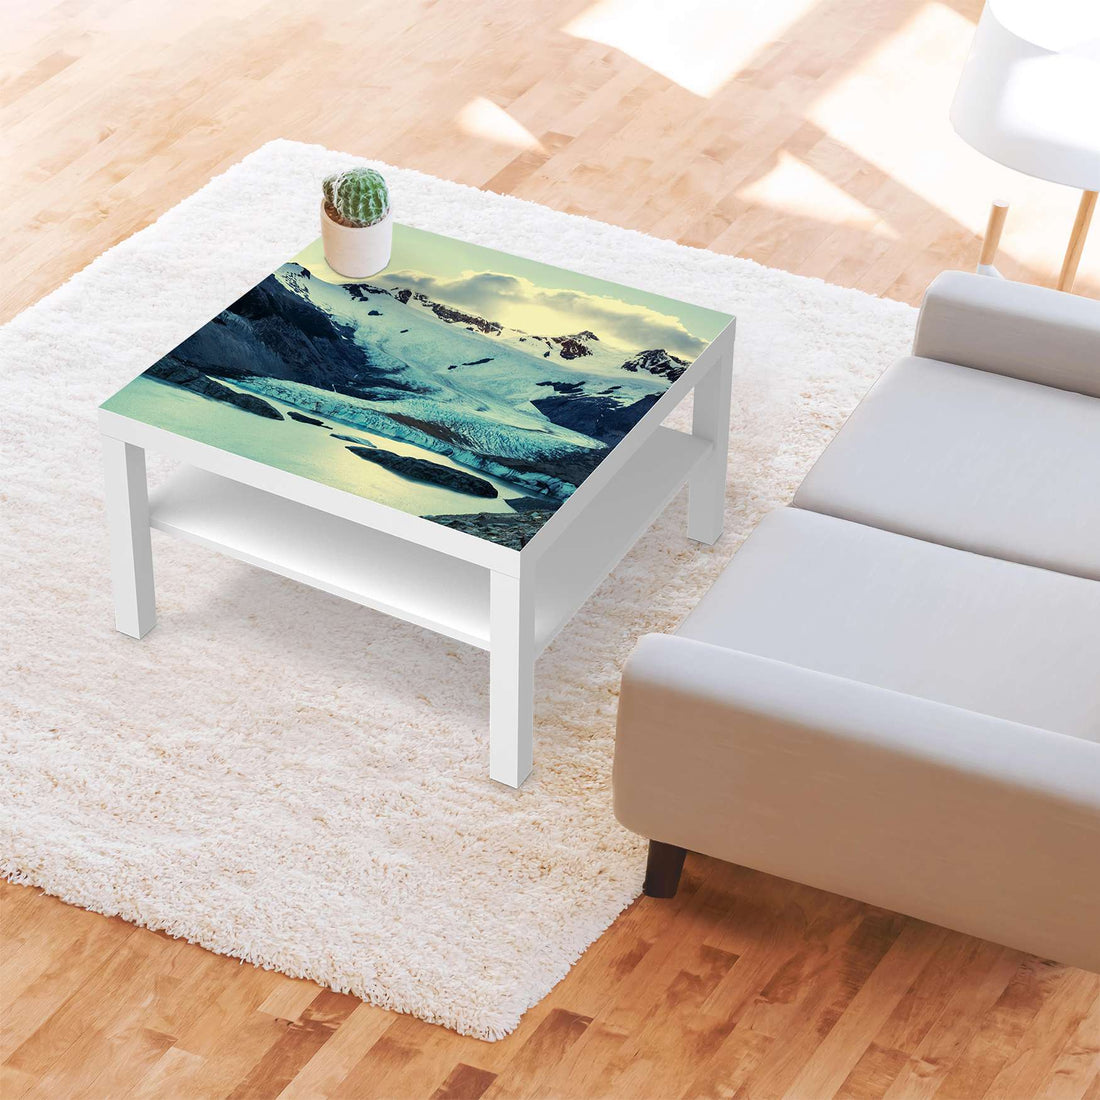 Selbstklebende Folie Patagonia - IKEA Lack Tisch 78x78 cm - Wohnzimmer